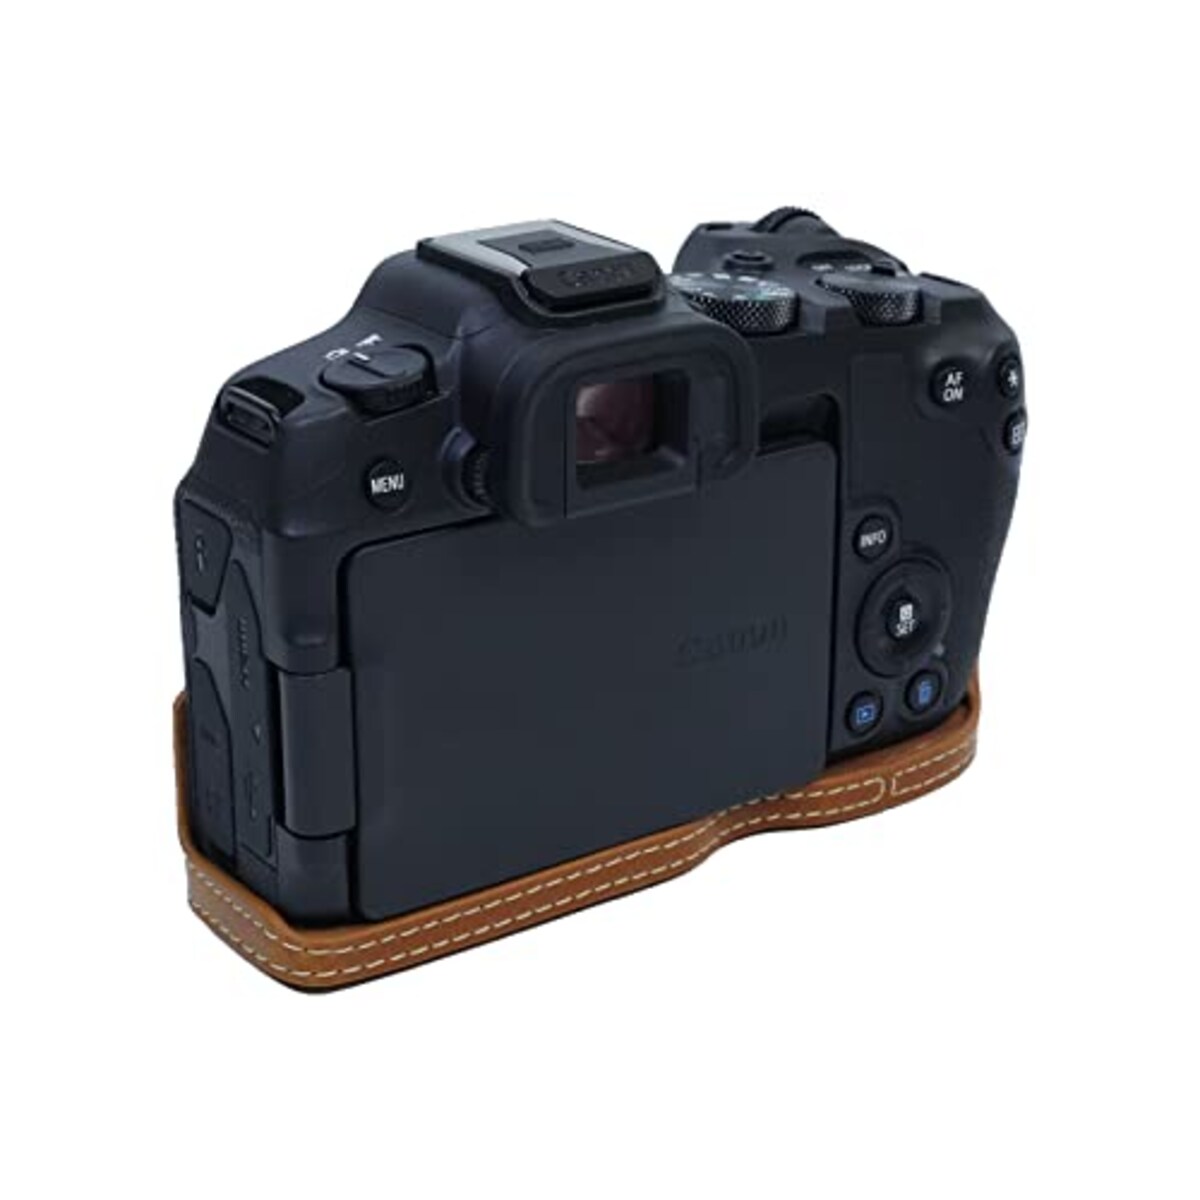  Rieibi Canon EOS R8 ケース、eos r8カメラケース eos r8ボディケース PUレザーカメラハーフケース バッテリー交換可能 三脚設置でき 開閉自由 ベースを保護でき ４色展開 PUレザー EOS R8 保護カバー ハーフケース eos r8 ハーフケースアウトドア撮影用 (ブラウン)画像5 